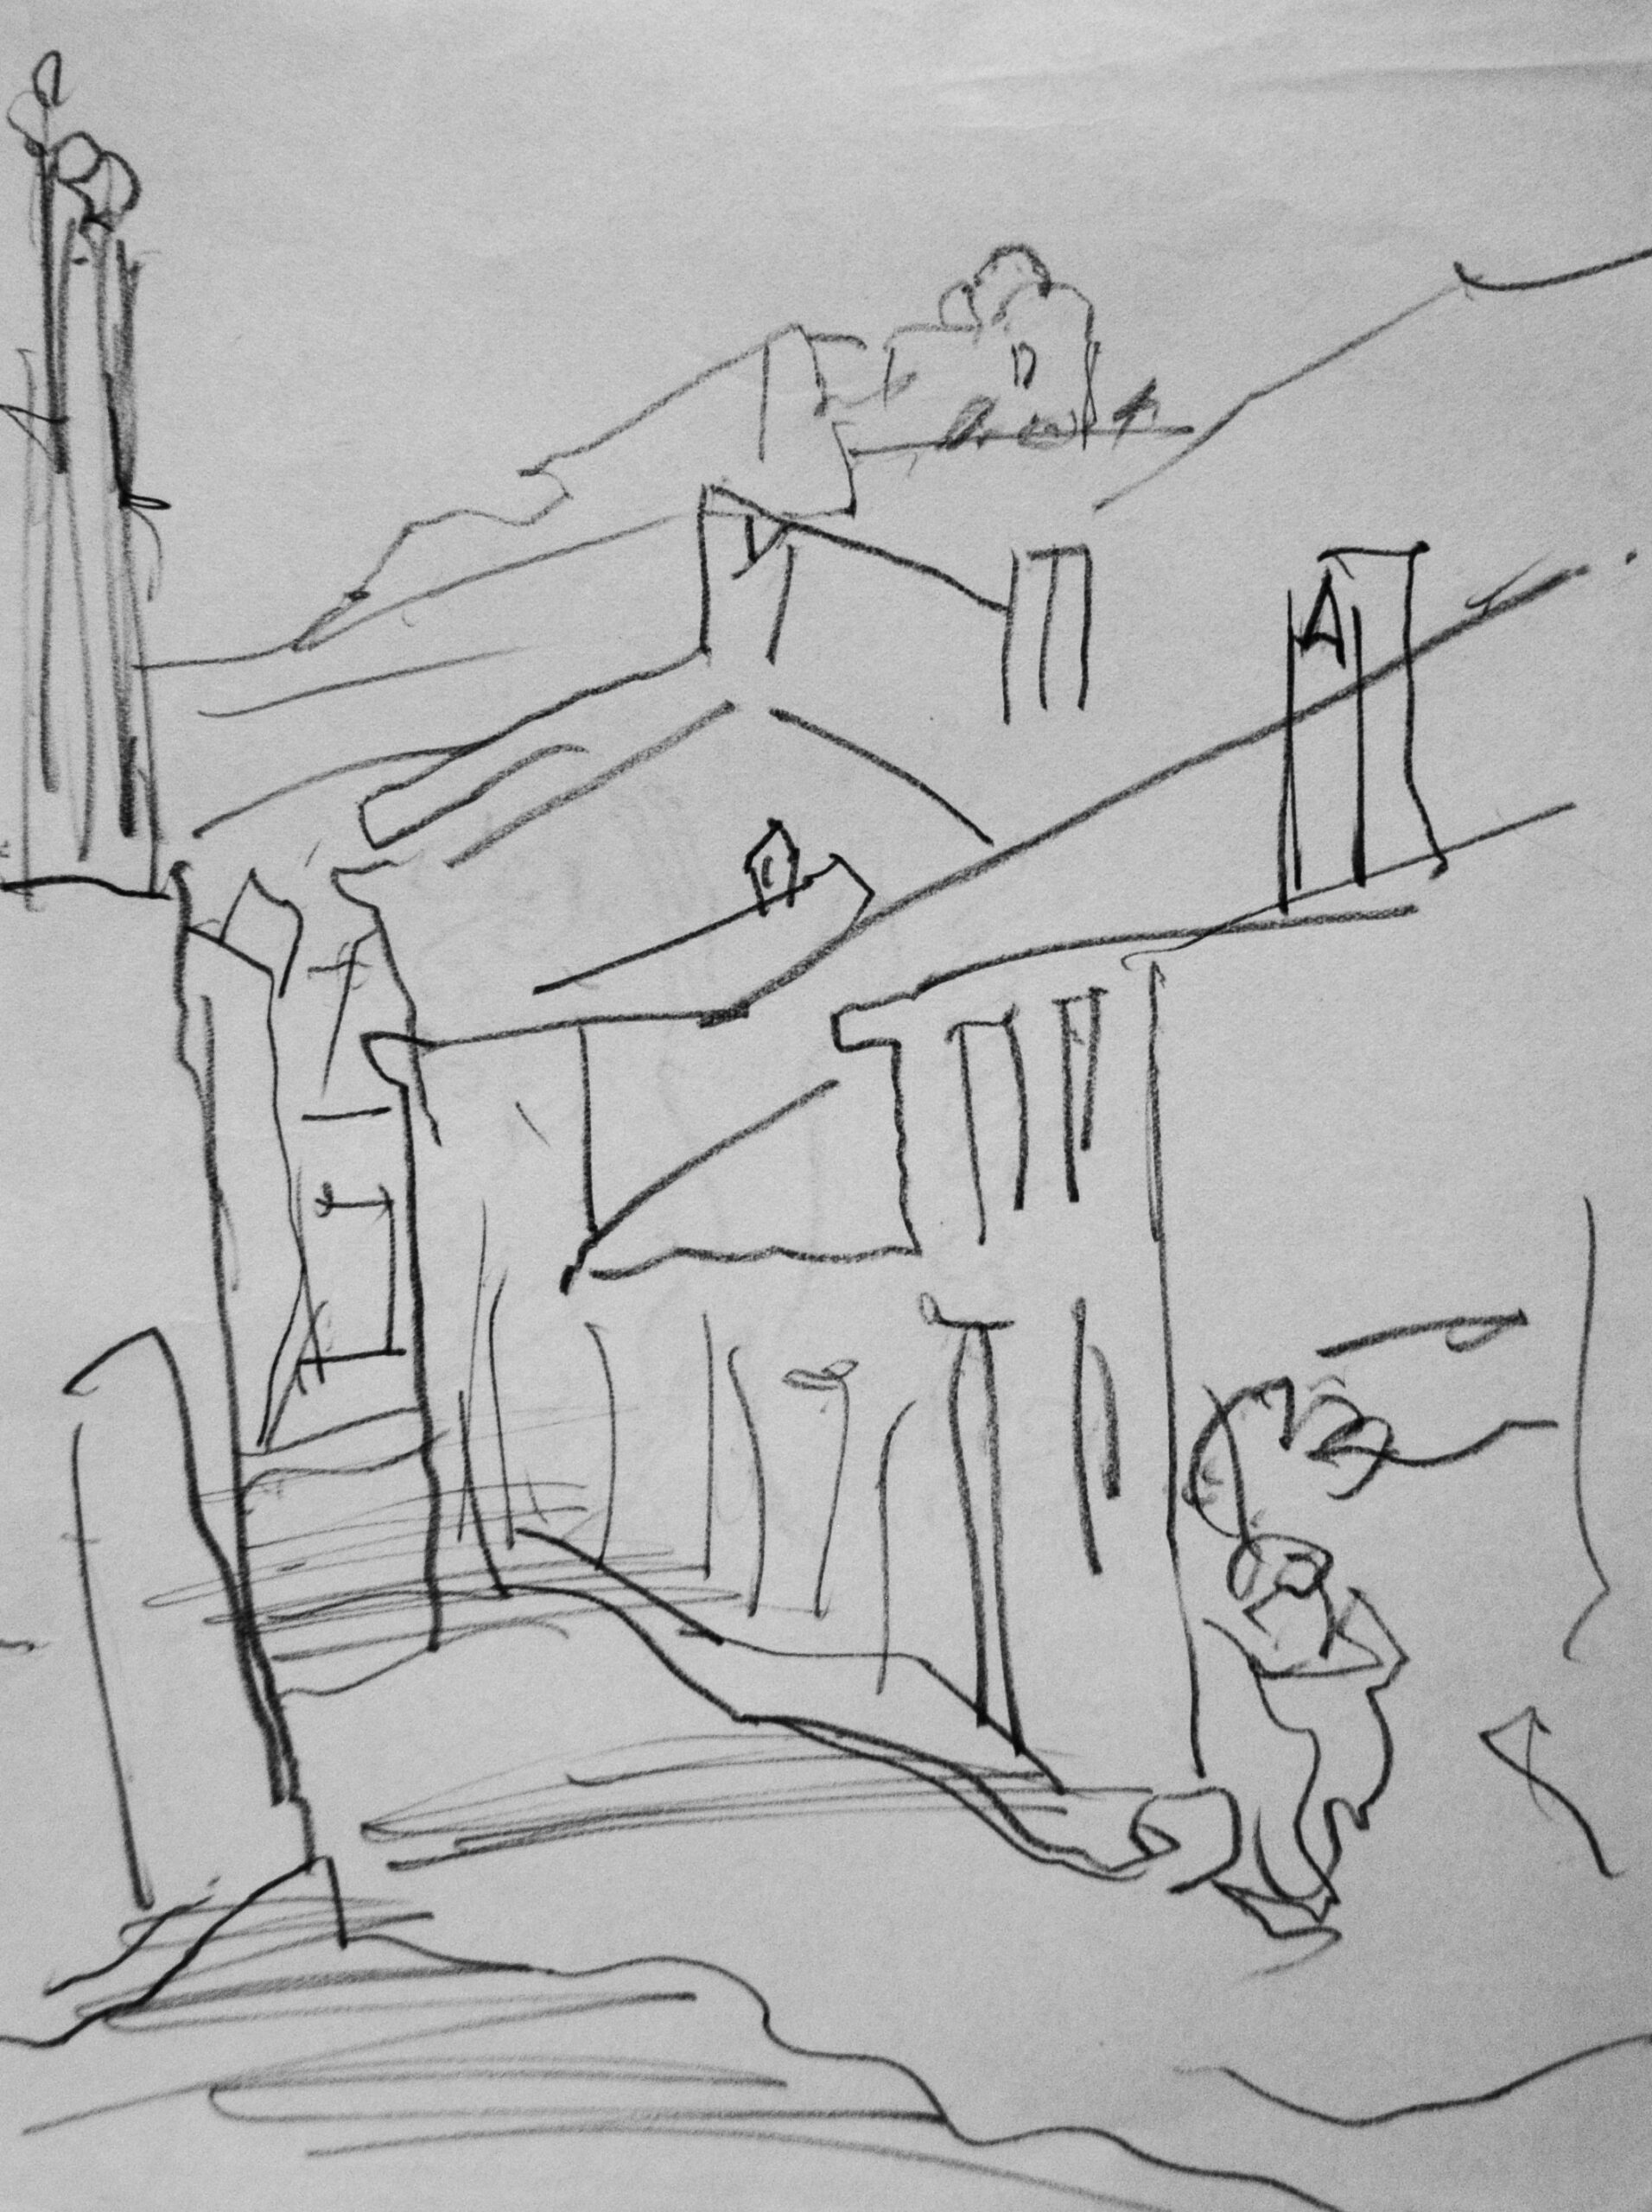 Dibujo de José Manaut titulado Calle de pueblo. Carboncillo sobre papel.